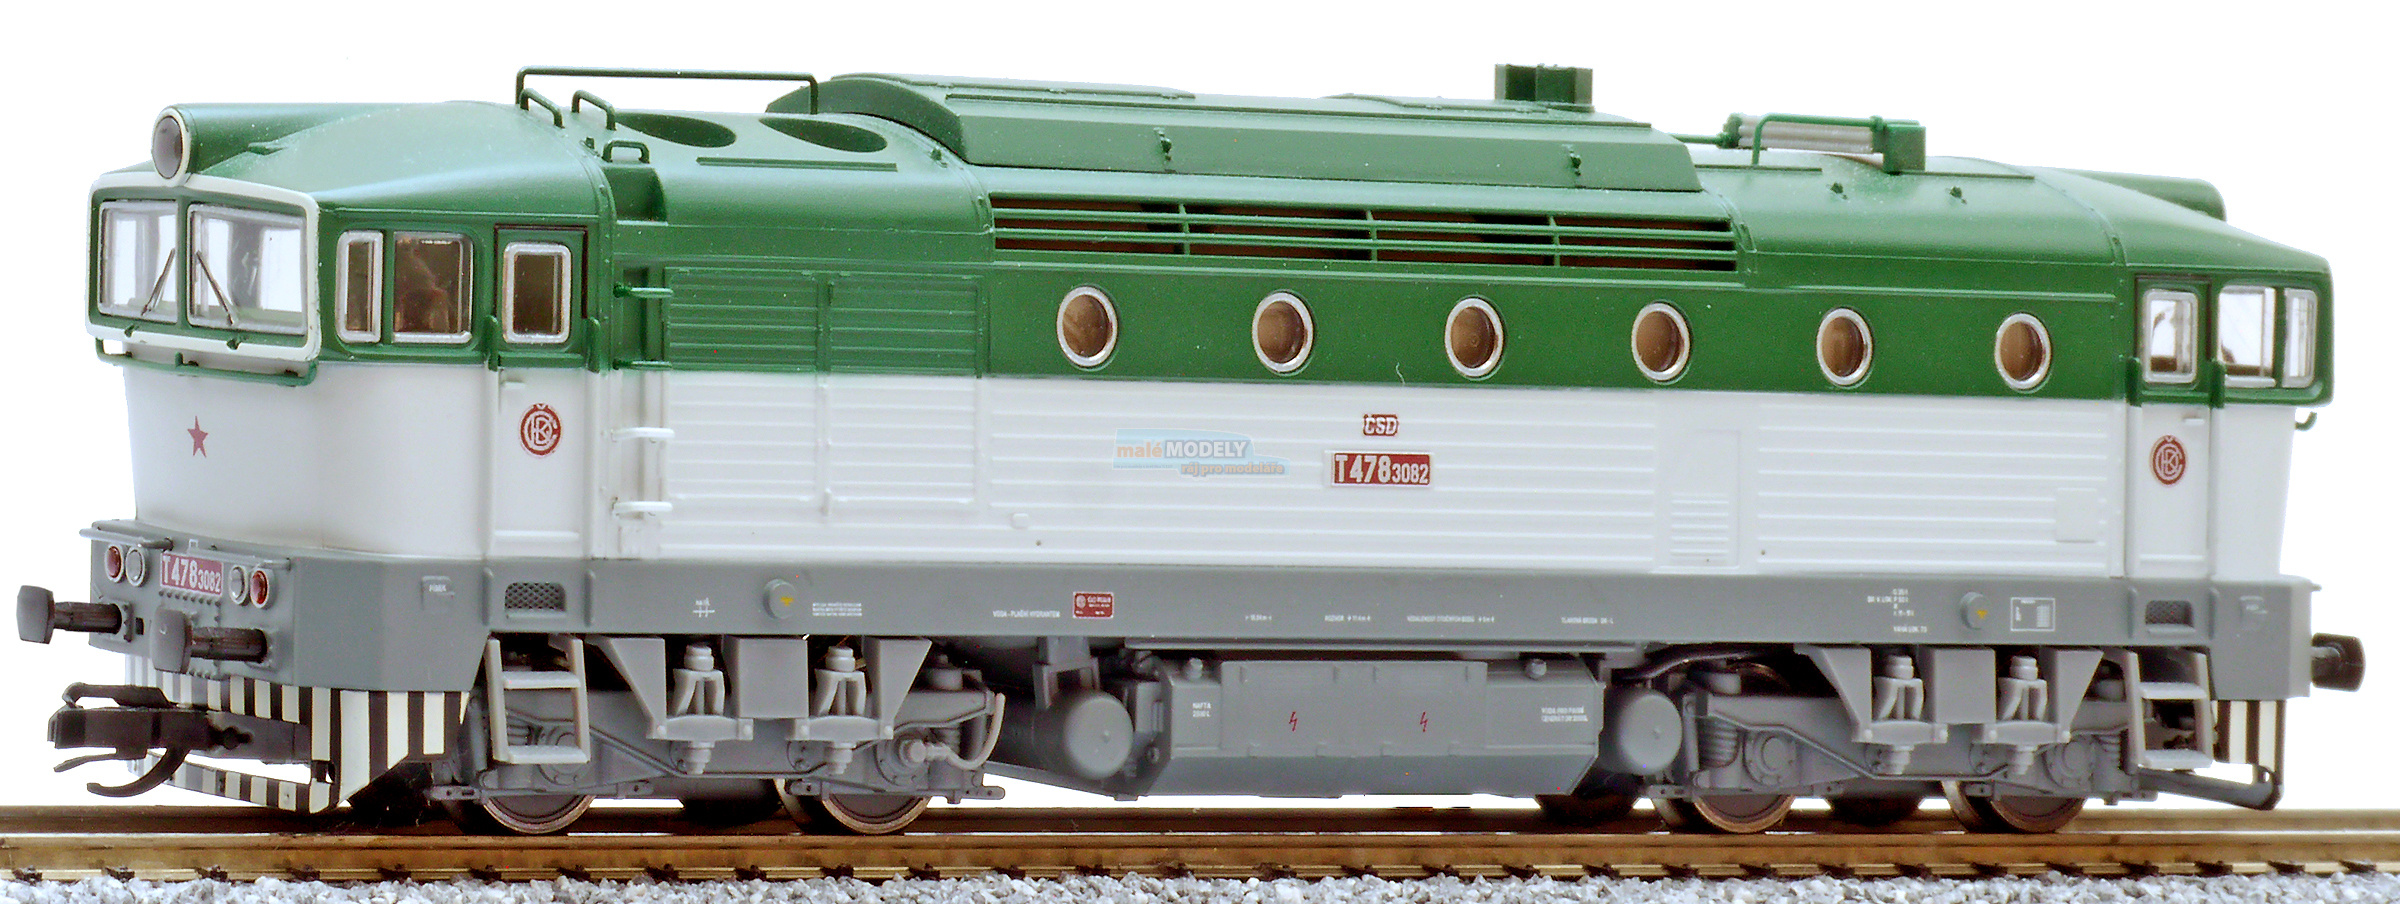 Dieslová lokomotiva T478 - Brejlovec, zelená